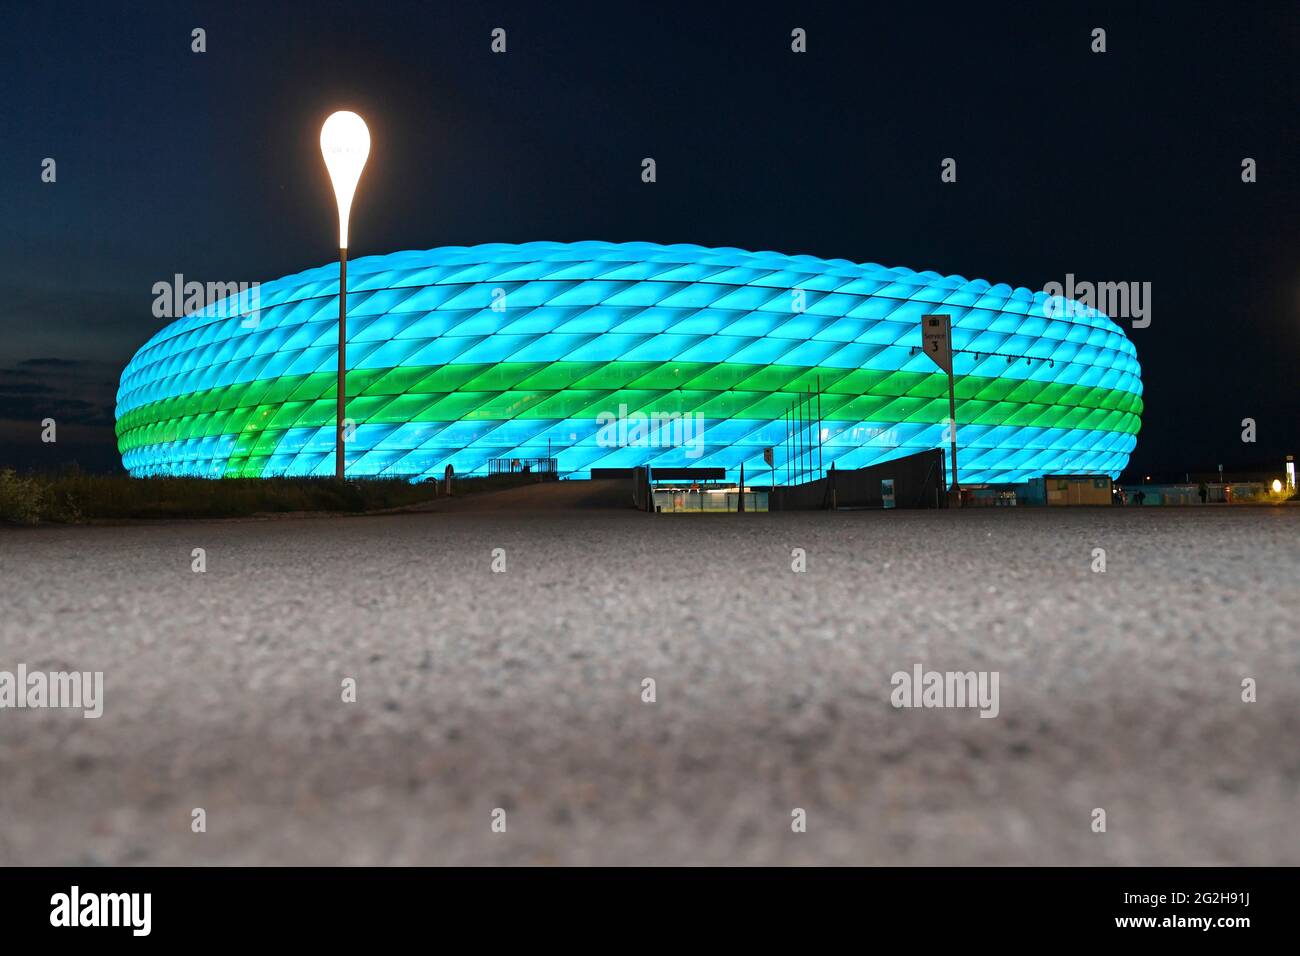 Football EURO 2020/Fußball Arena Muenchen (Allianz Arena) se ilumina con iluminación especial, descripción general, toma posterior, estadio, descripción general del estadio, el 06/11/2021. Fútbol EM 2020 del 06/11/2021 al 07/11/2021. Foto de stock